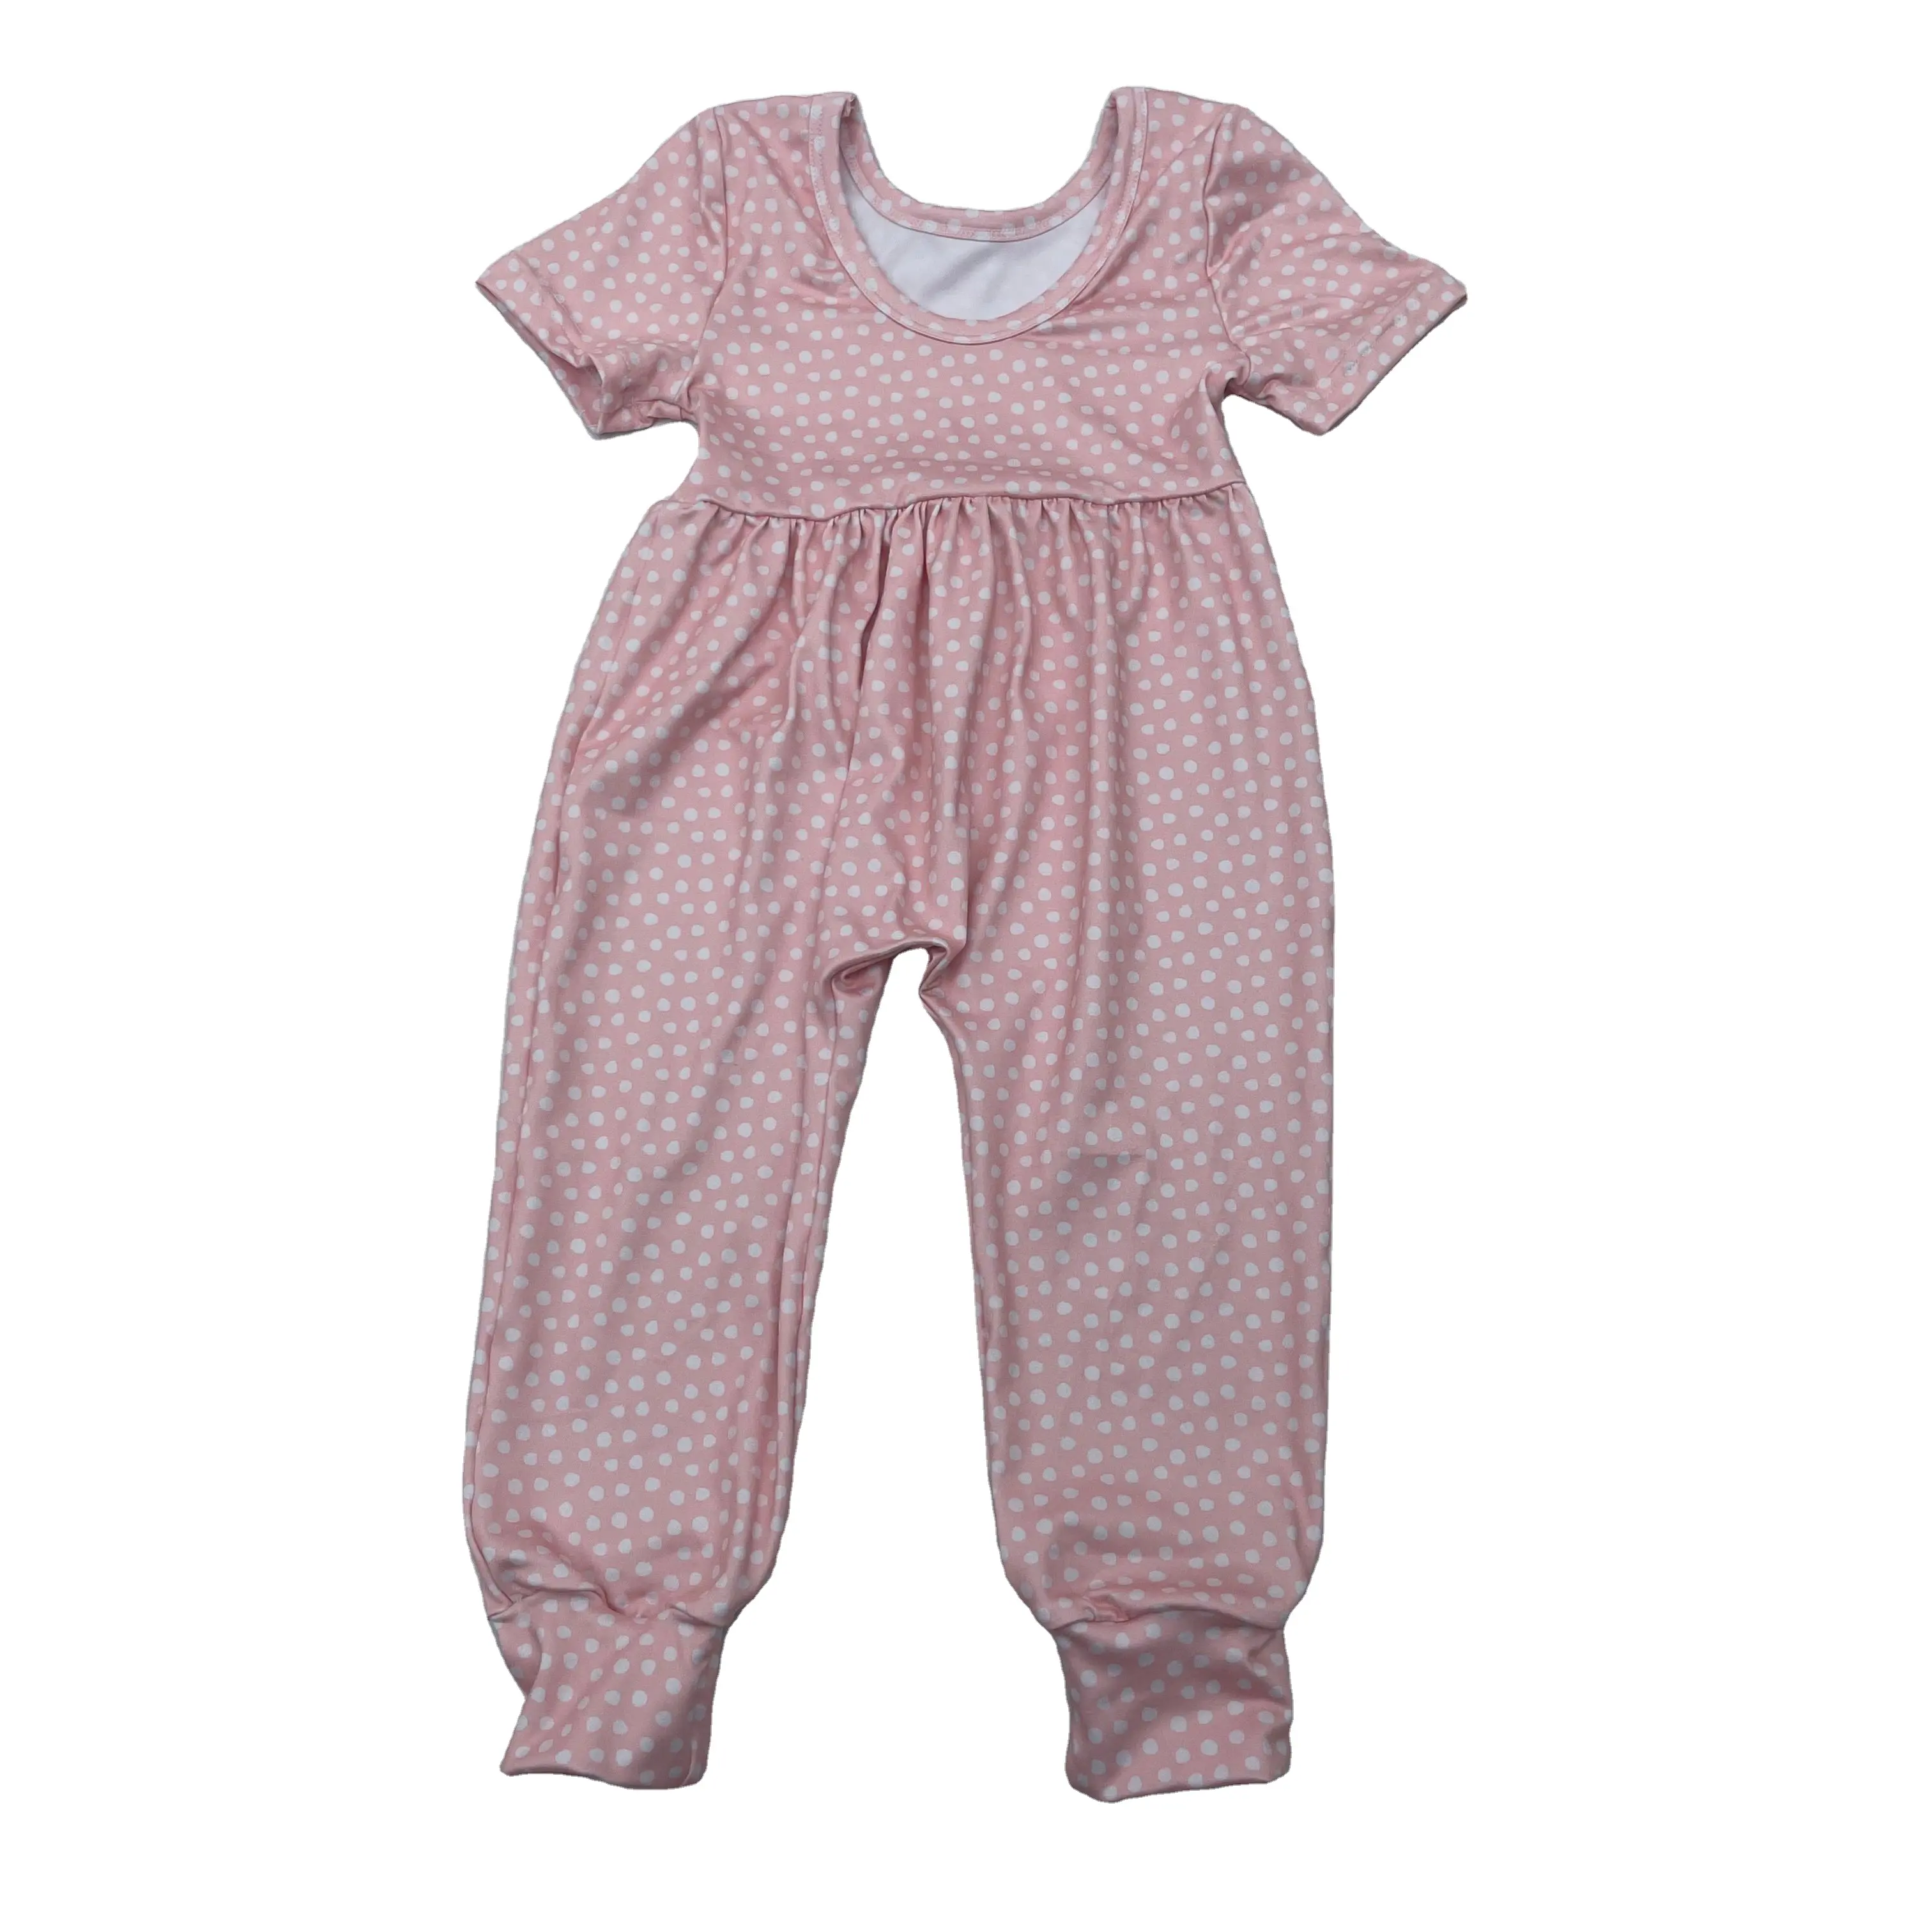 pink polka dot Kids Clothing Natural Fabric short Sleeves 95% Bamboo 5%Spandex Baby Romper Pajamas